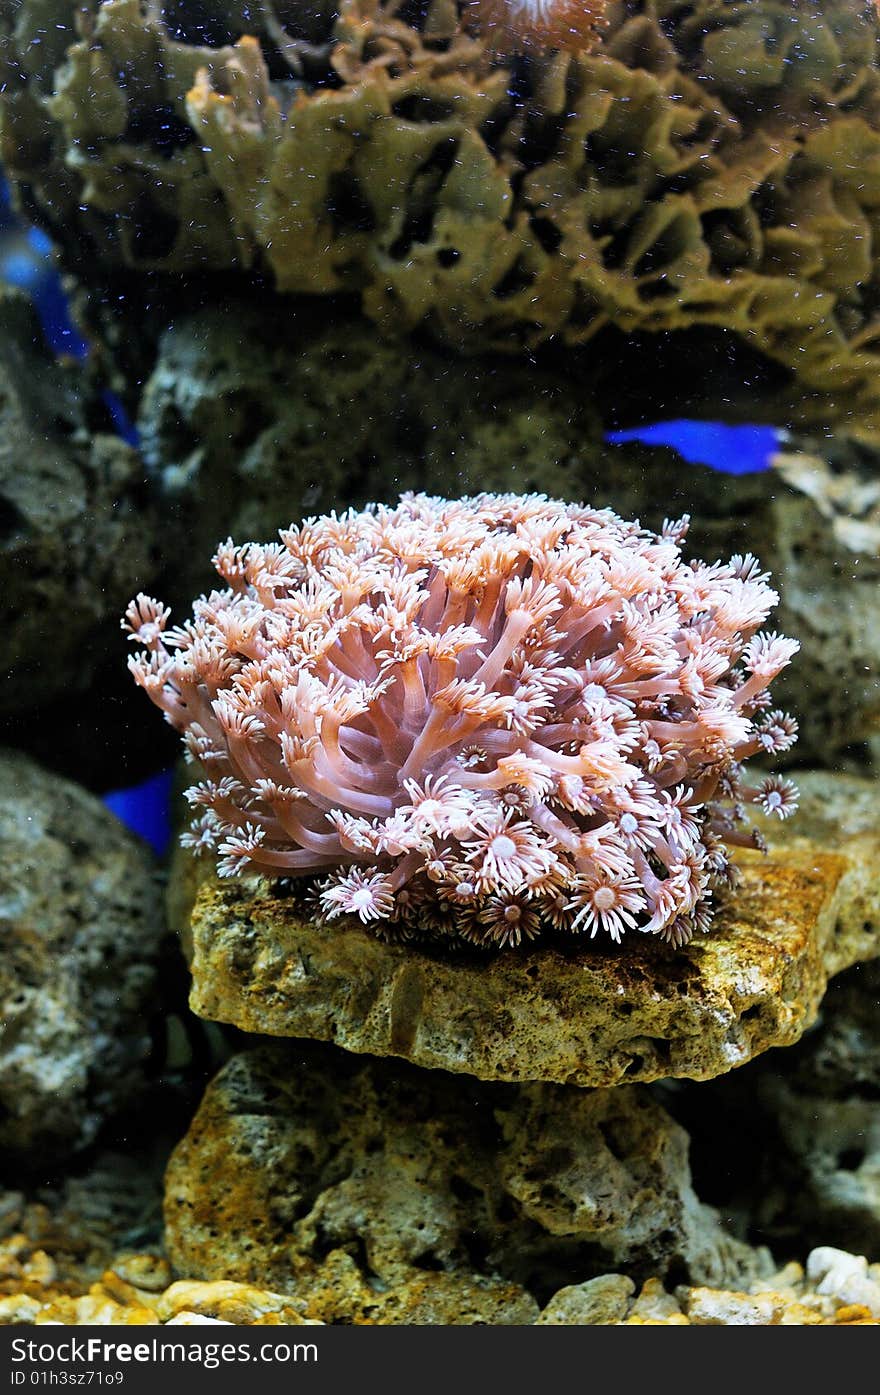 Underwater shot of coral reef